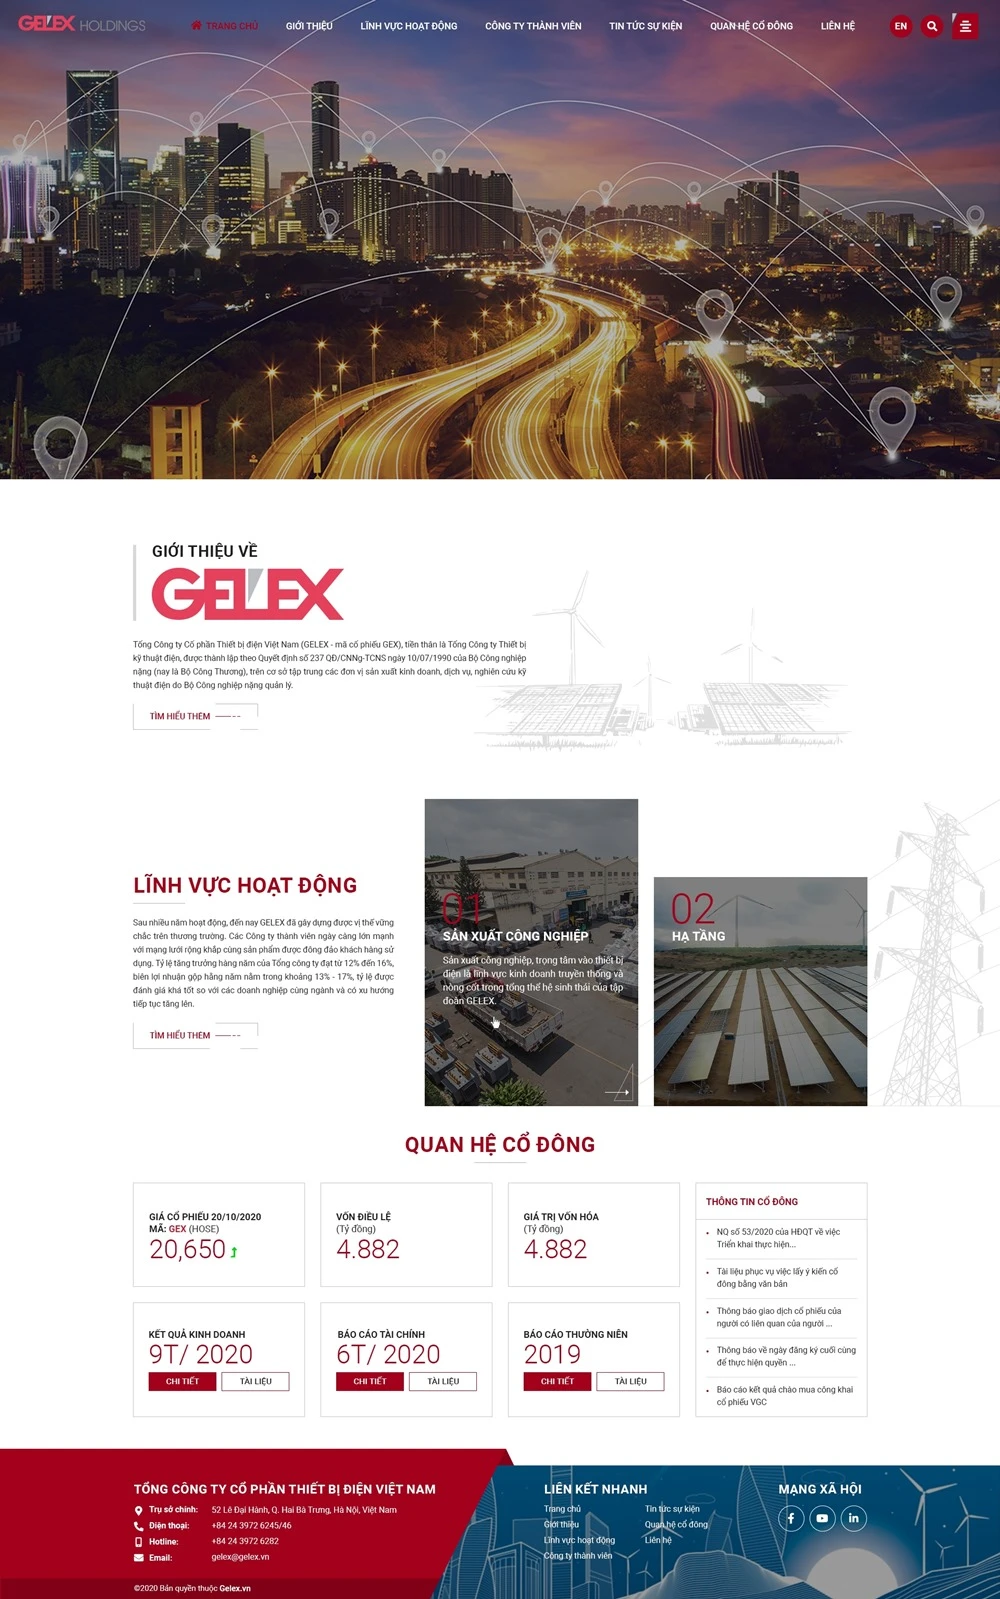 Tập đoàn Gelex